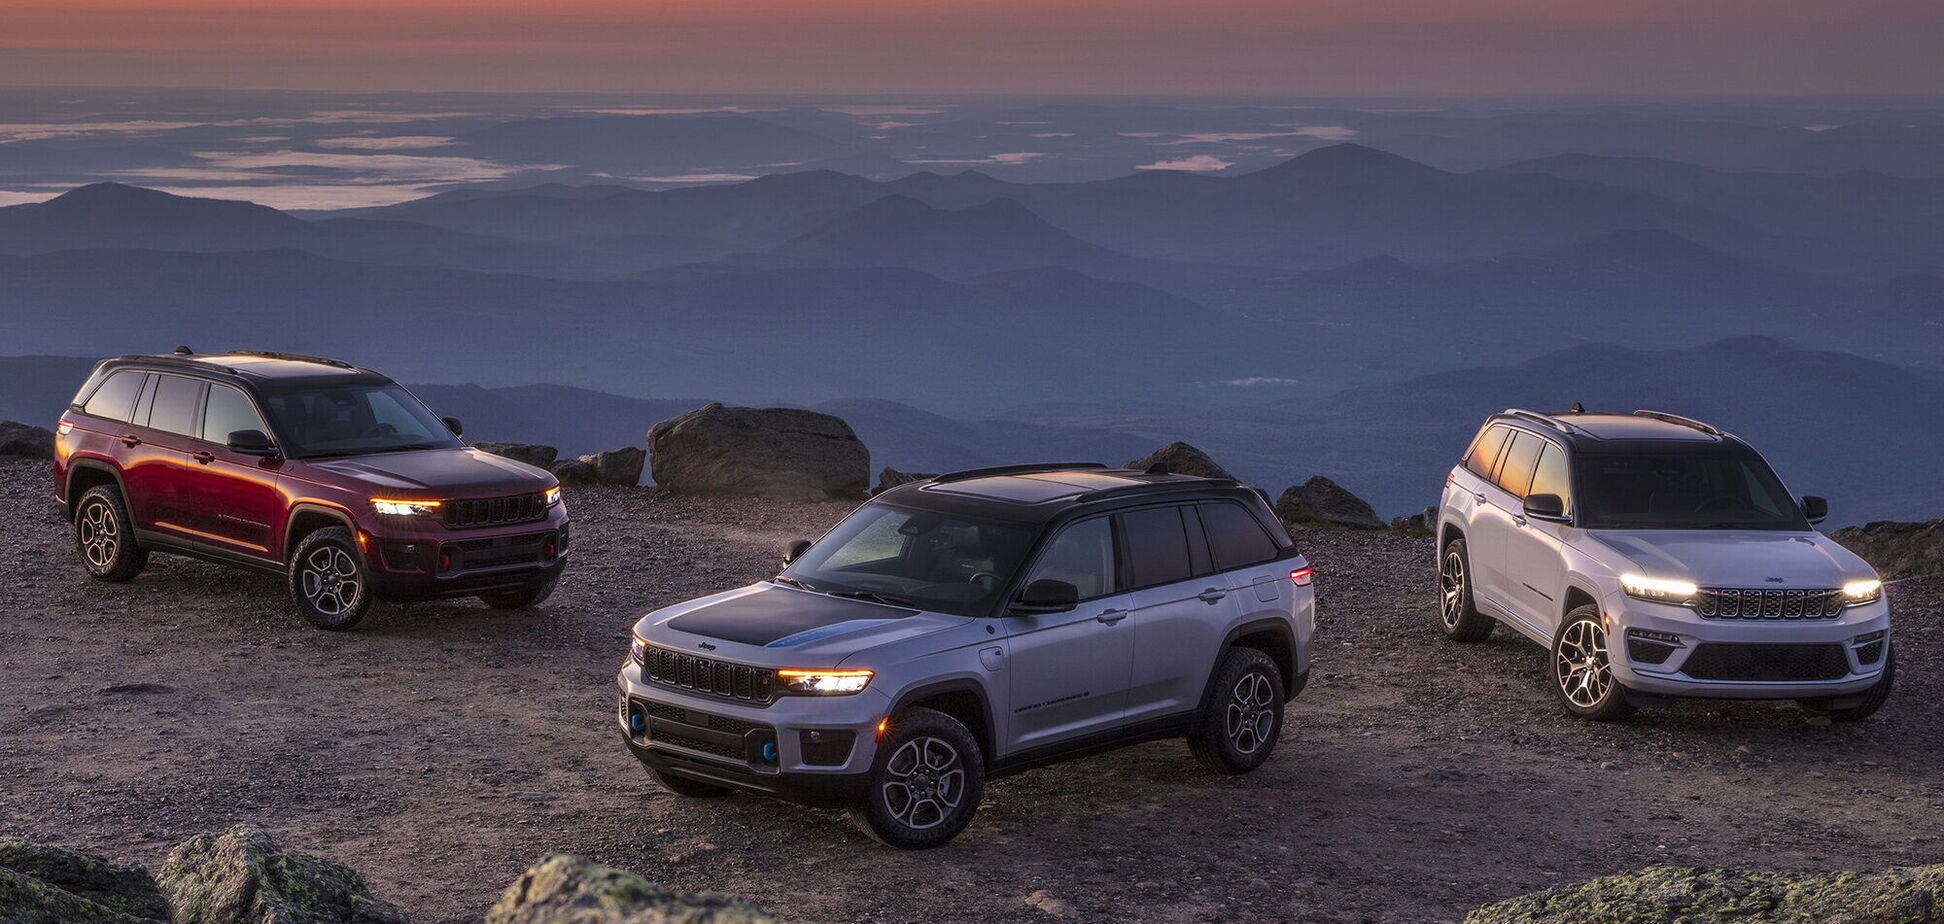 Jeep презентовал пятиместный Grand Cherokee нового поколения